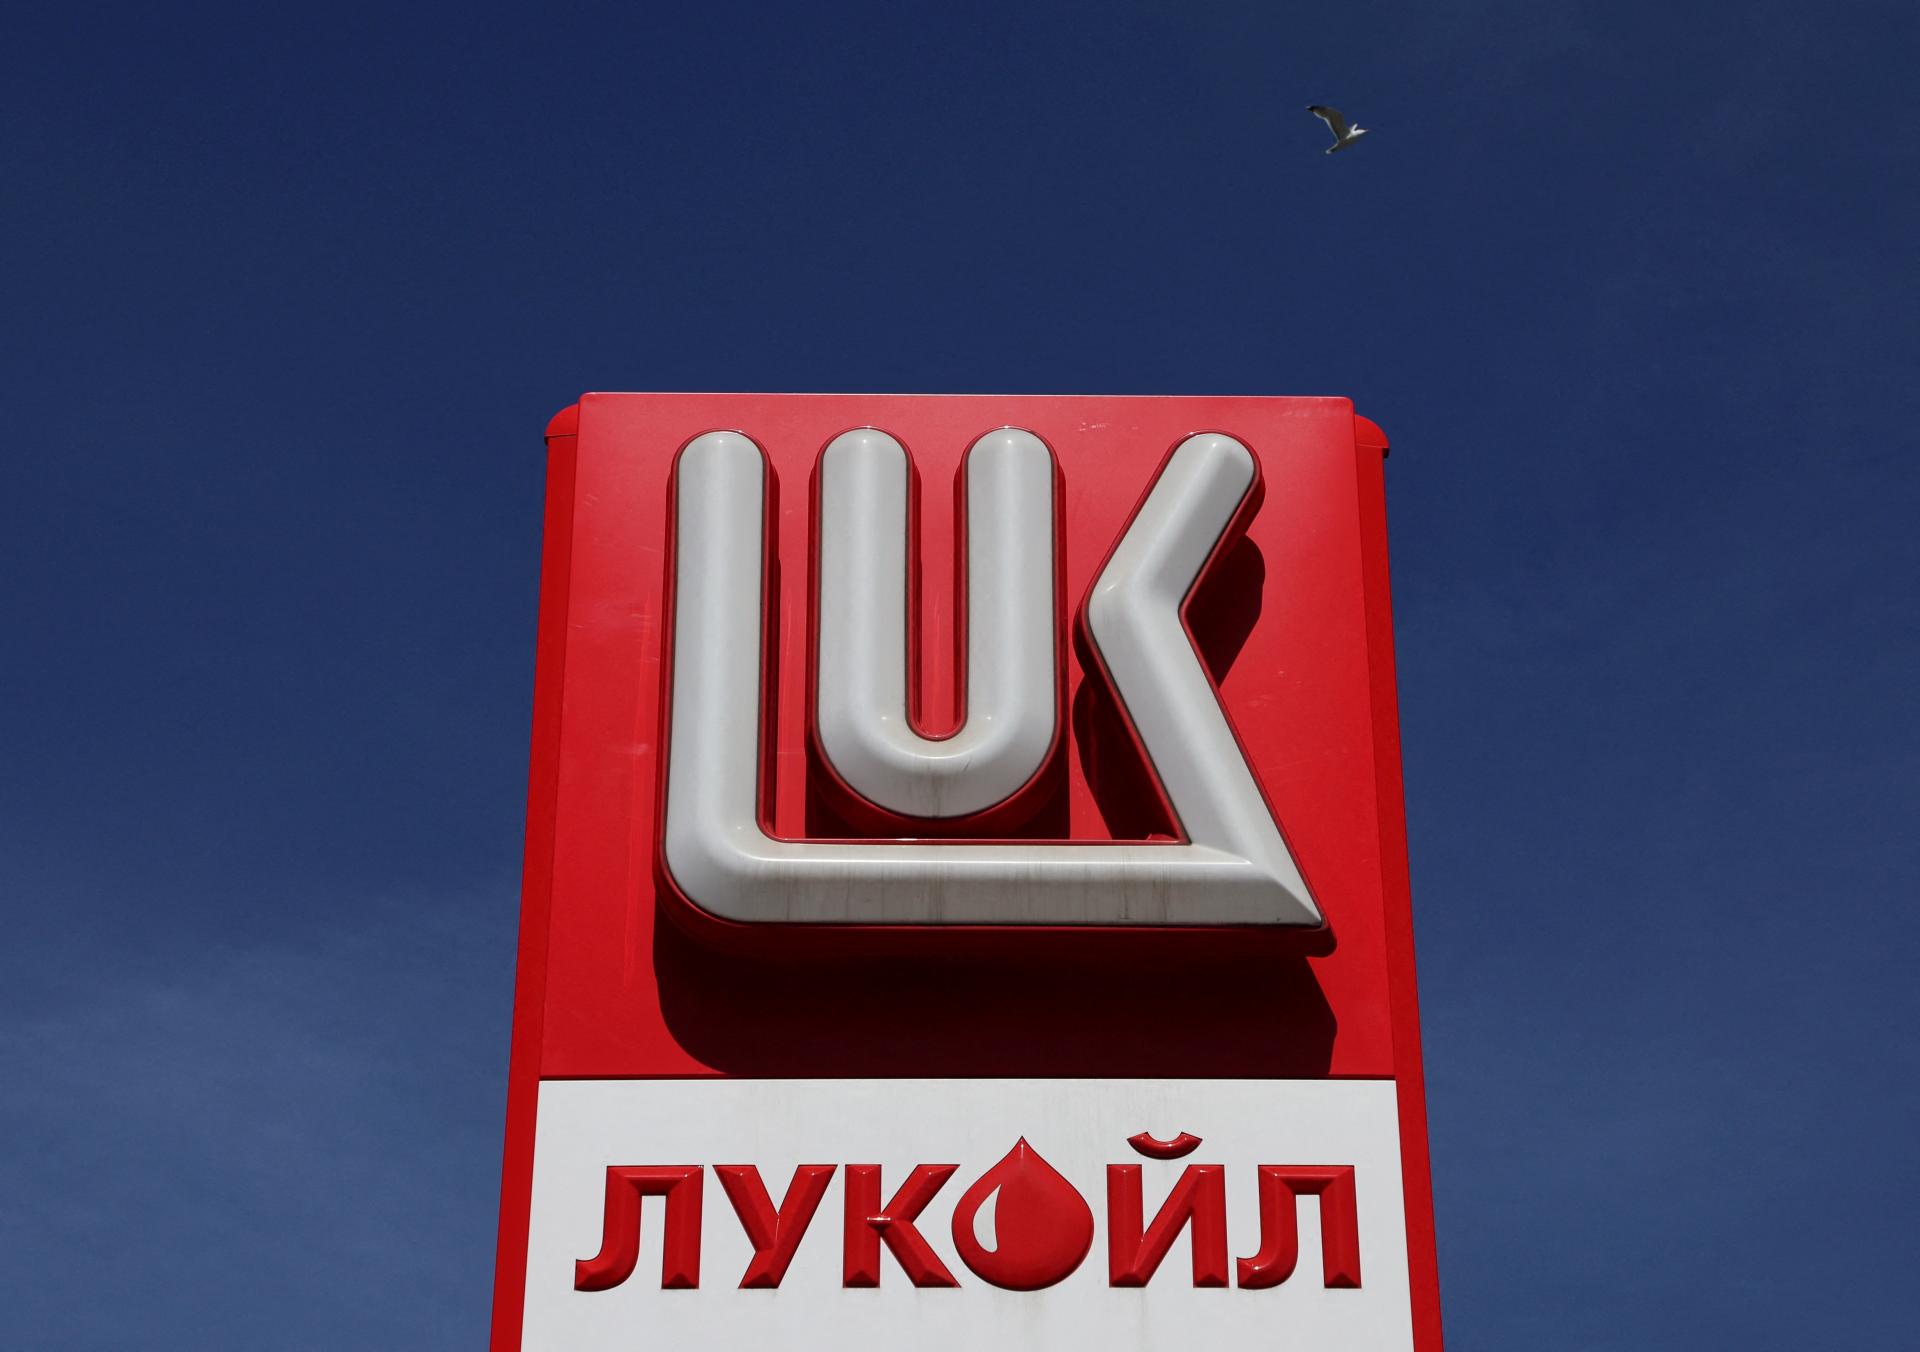 Ukrajinský zákaz pre Lukoil môže mať silný dopad na Maďarsko, píše Politico. Ovplyvnť môže aj Slovensko